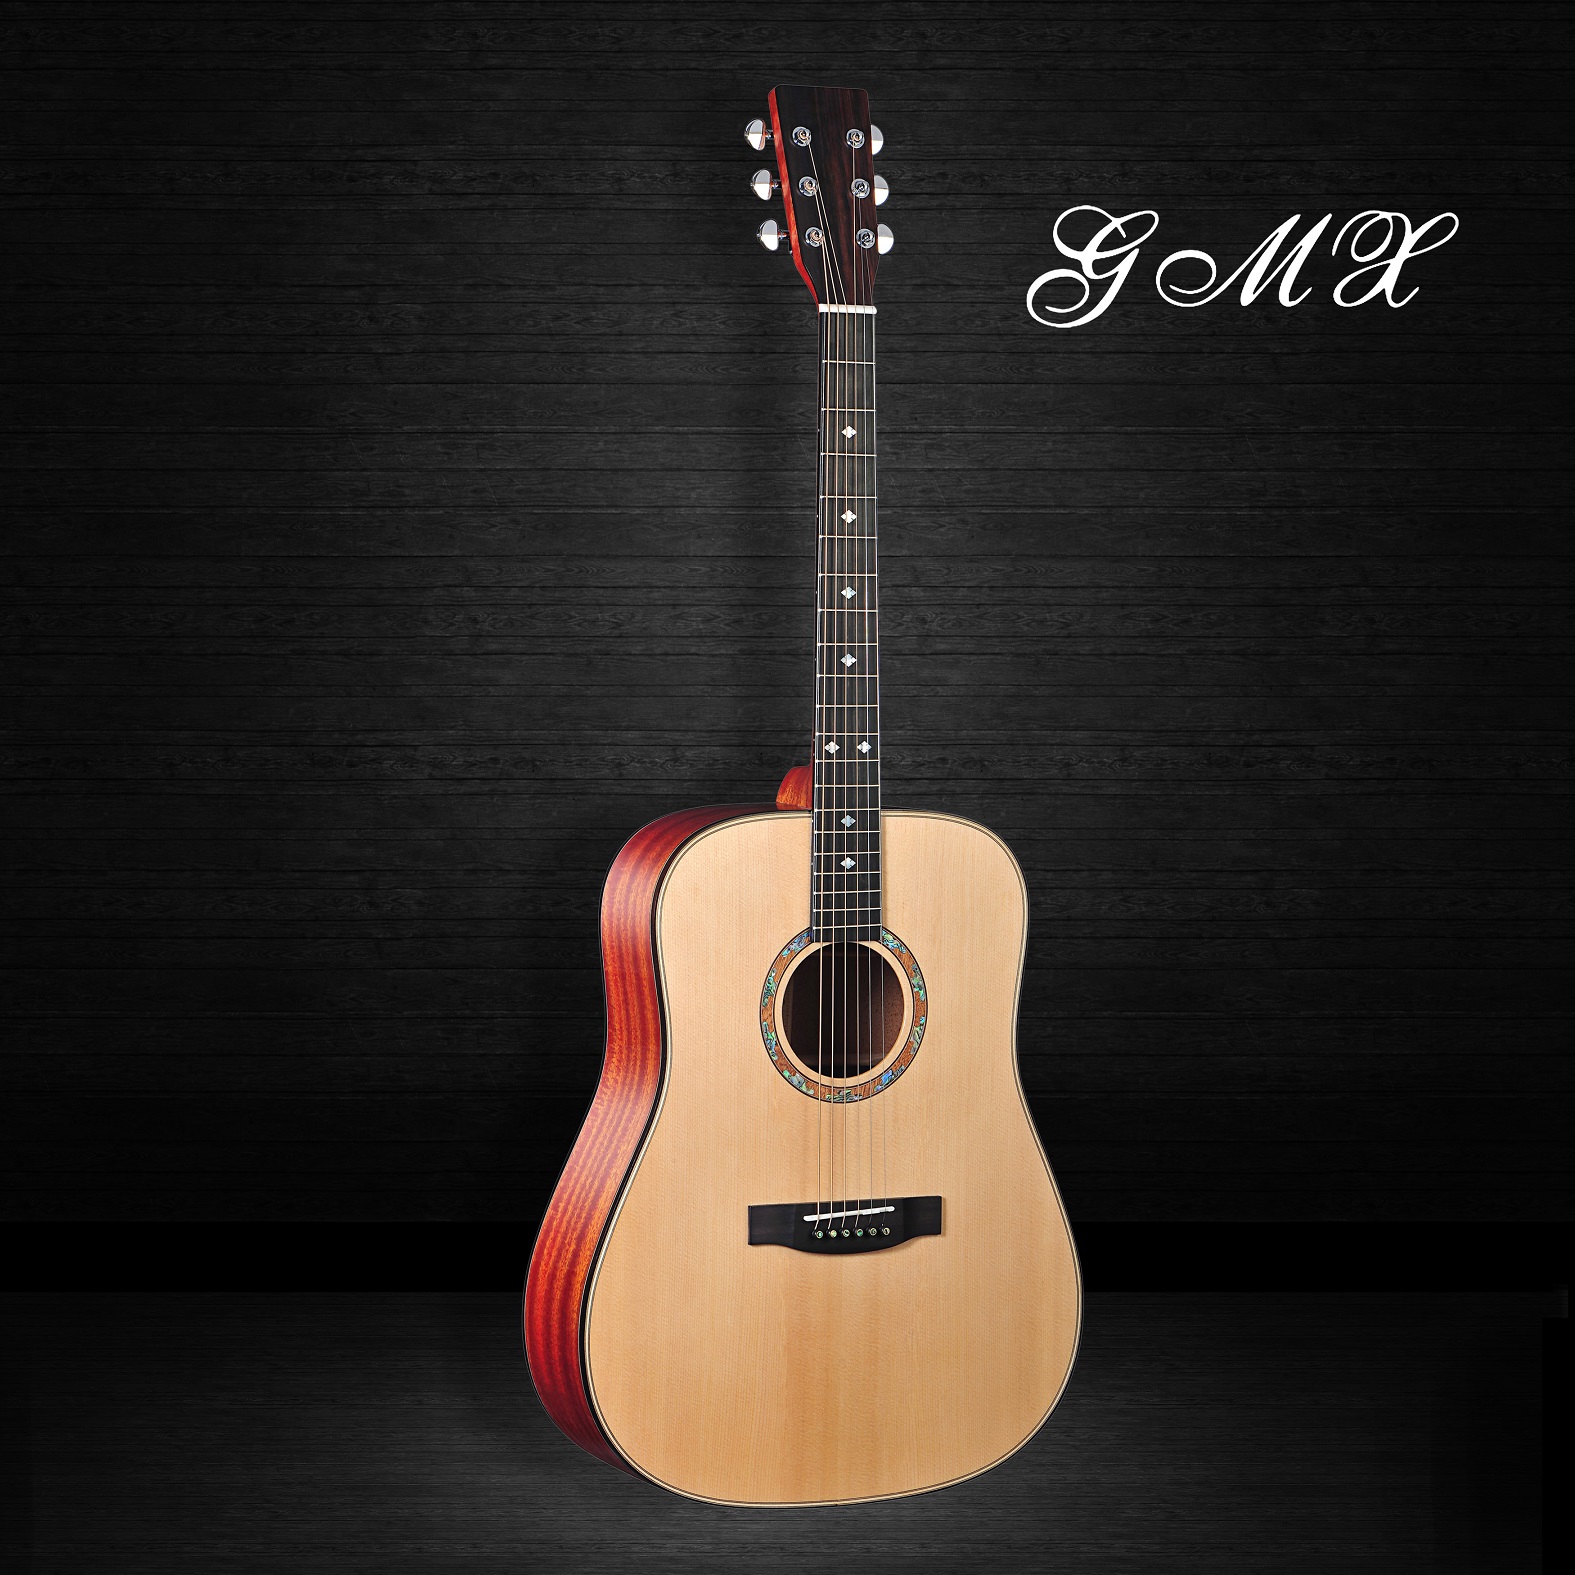 중국 유행 기타 어쿠스틱 기타로 만든 도매 기타